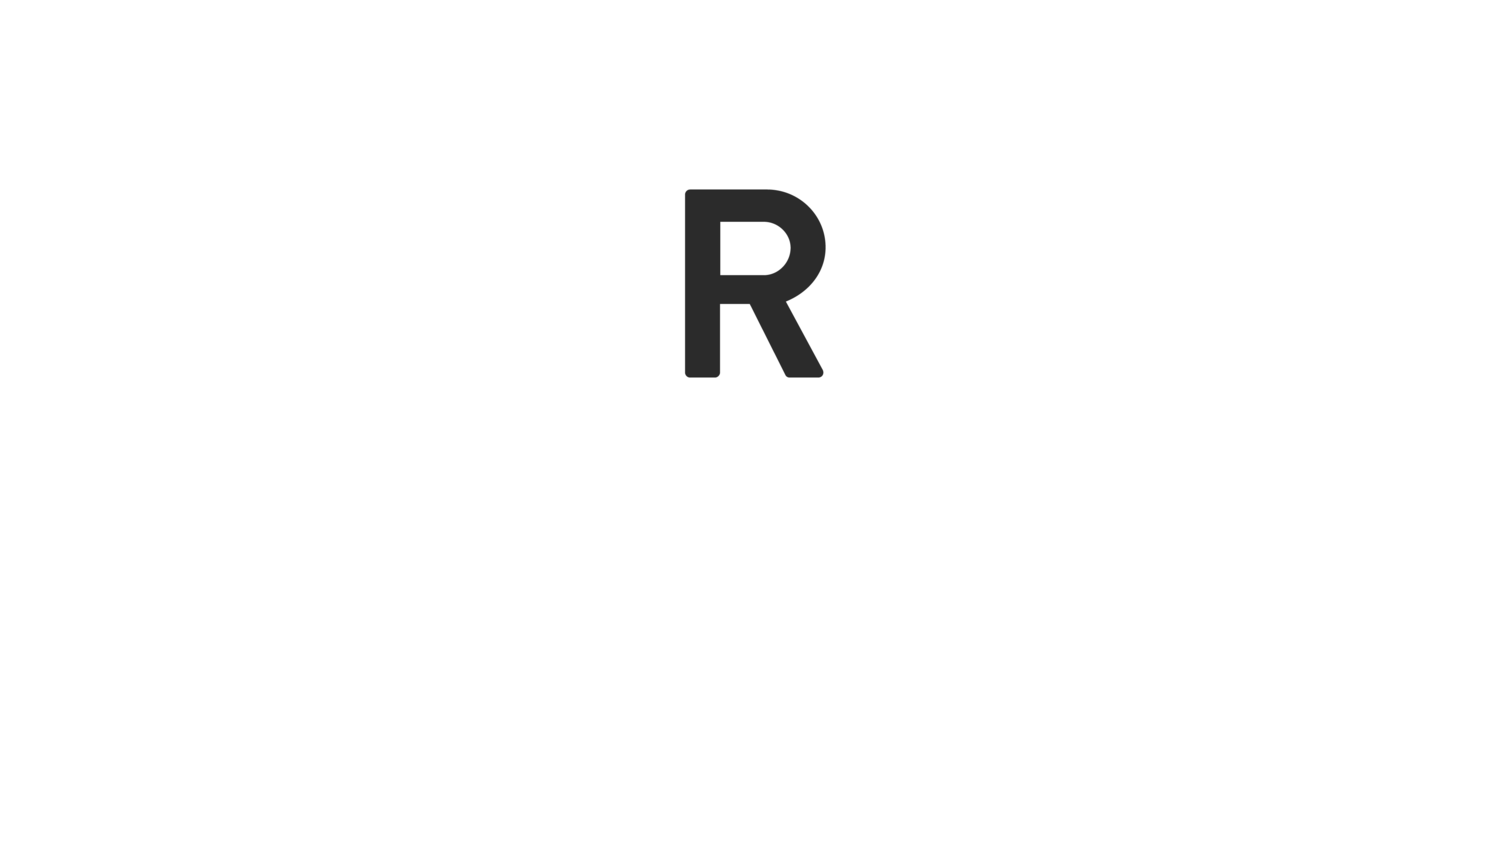 rr-header-logo-white-14.png